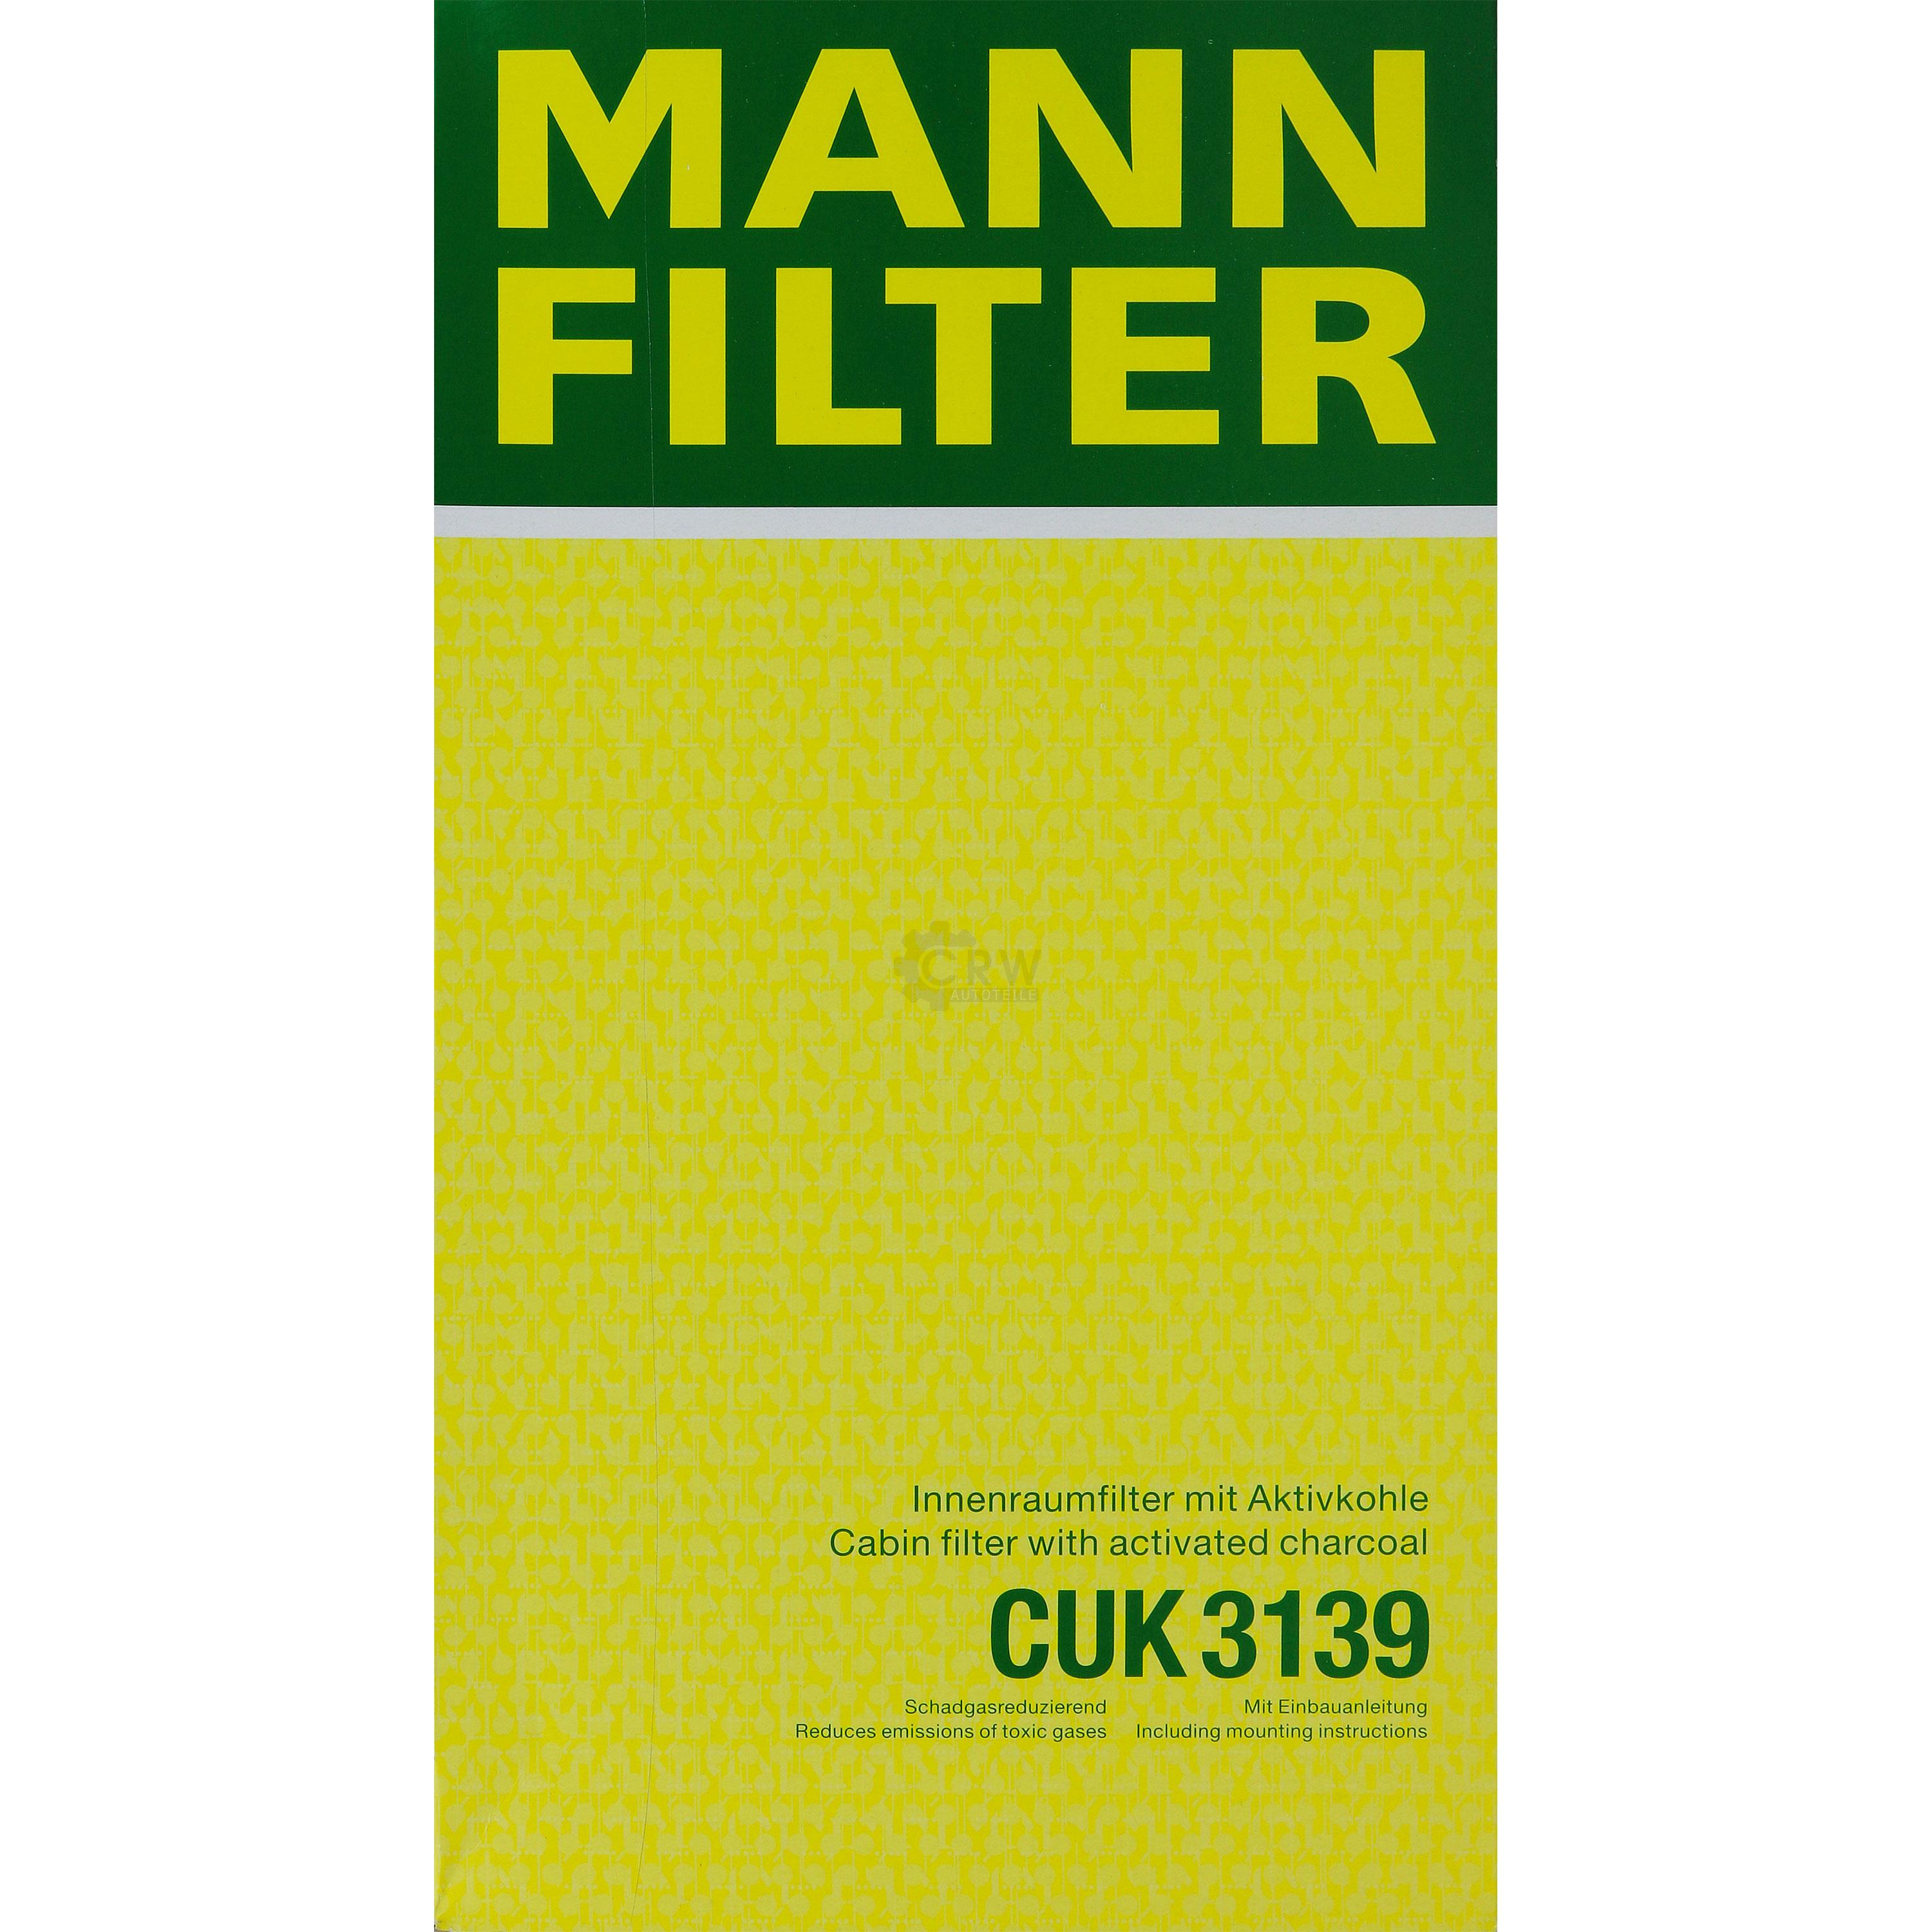 MANN-FILTER Innenraumfilter Pollenfilter Aktivkohle CUK 3139